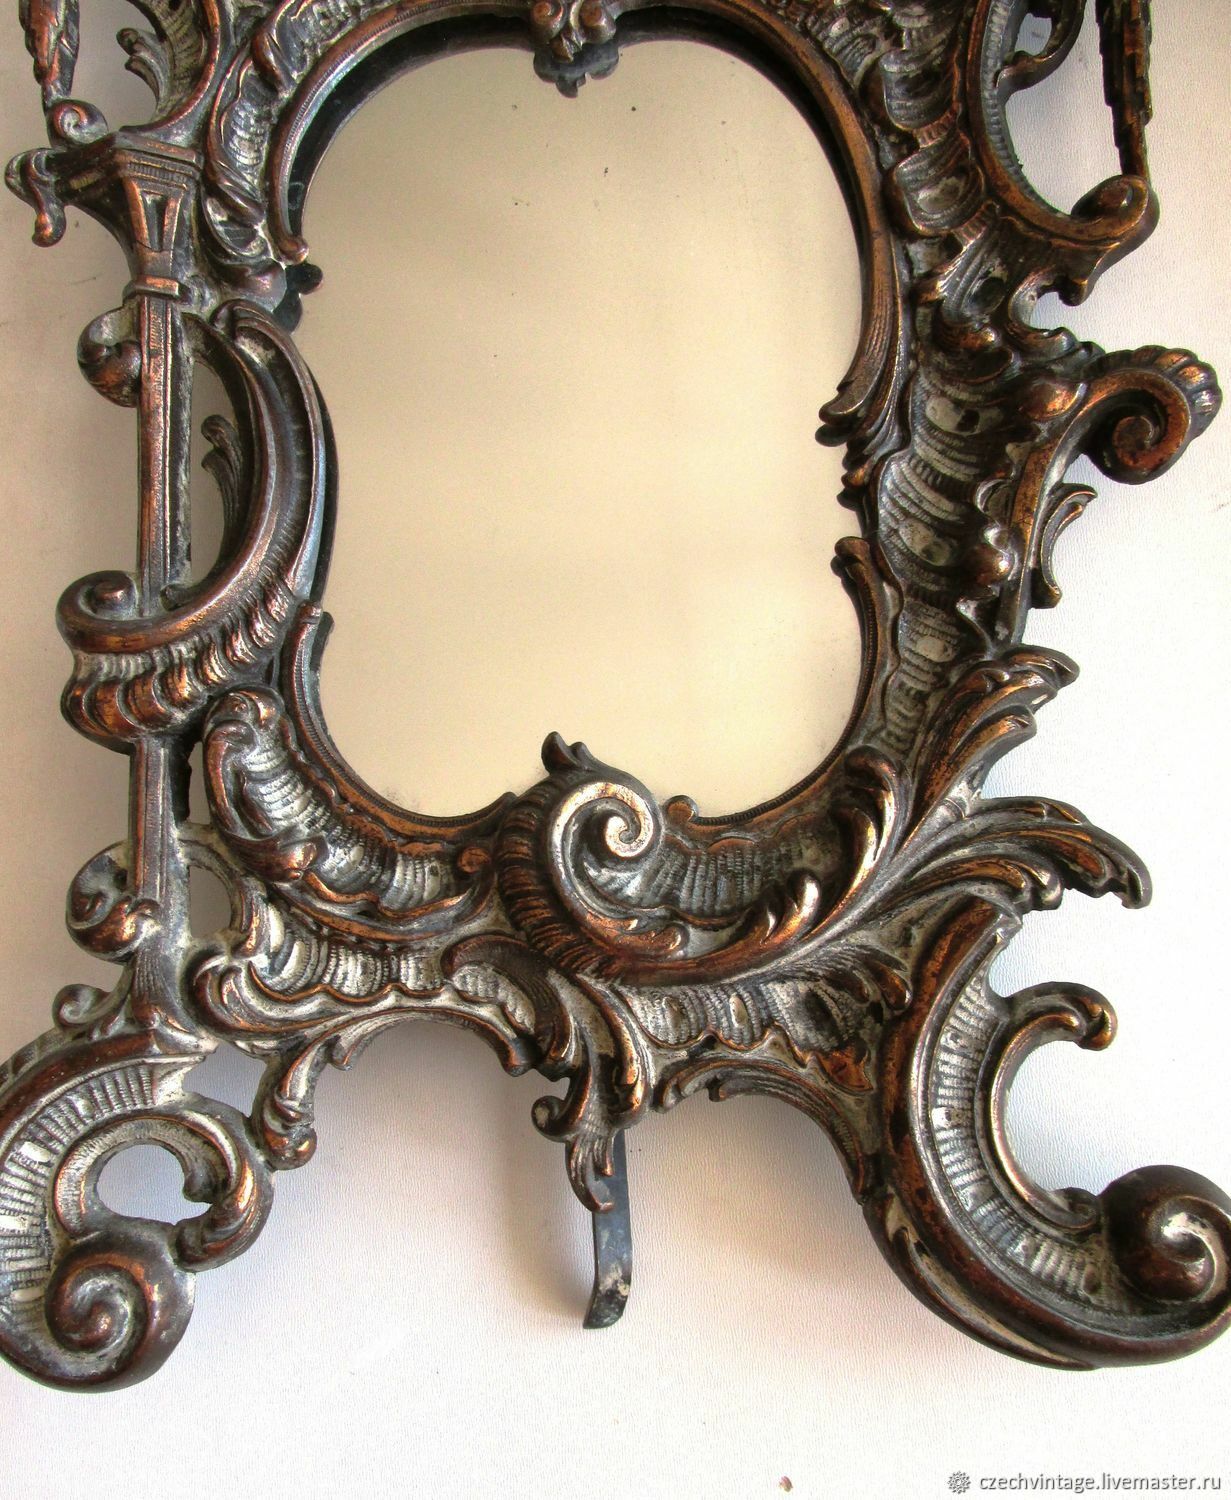 Купить старинное зеркало. Старинное резное зеркало. Старинная рама для зеркала. Антикварное зеркало. Старинные деревянные зеркала.